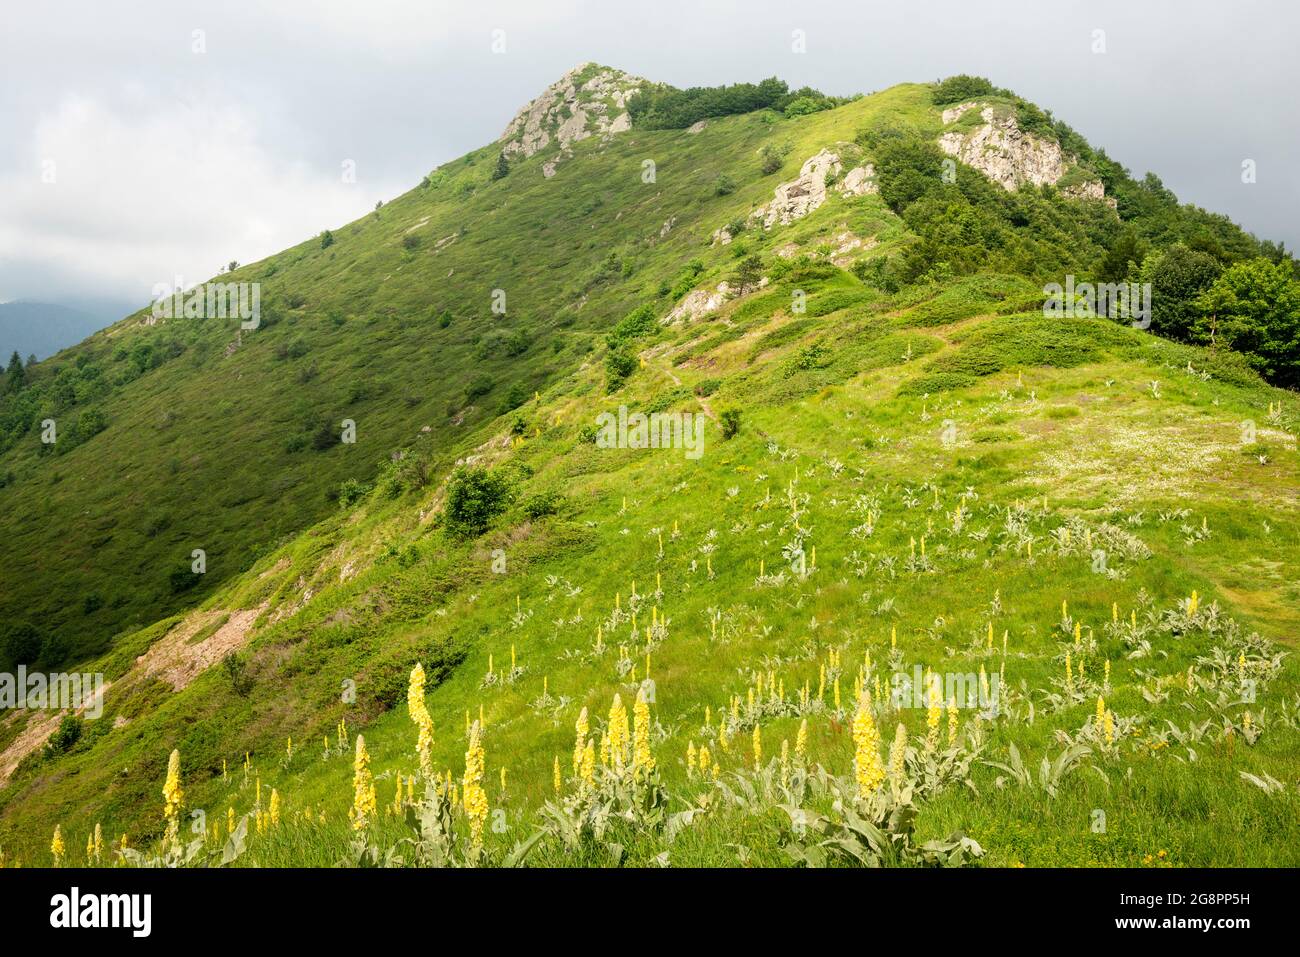 Vue pittoresque de la selle de pic de Kucheto et du Verbascum Thapsus ou de la fleur de Grand Mullein dans l'habitat naturel, Biosphère de l'UNESCO des Balkans centraux, Bulgarie Banque D'Images